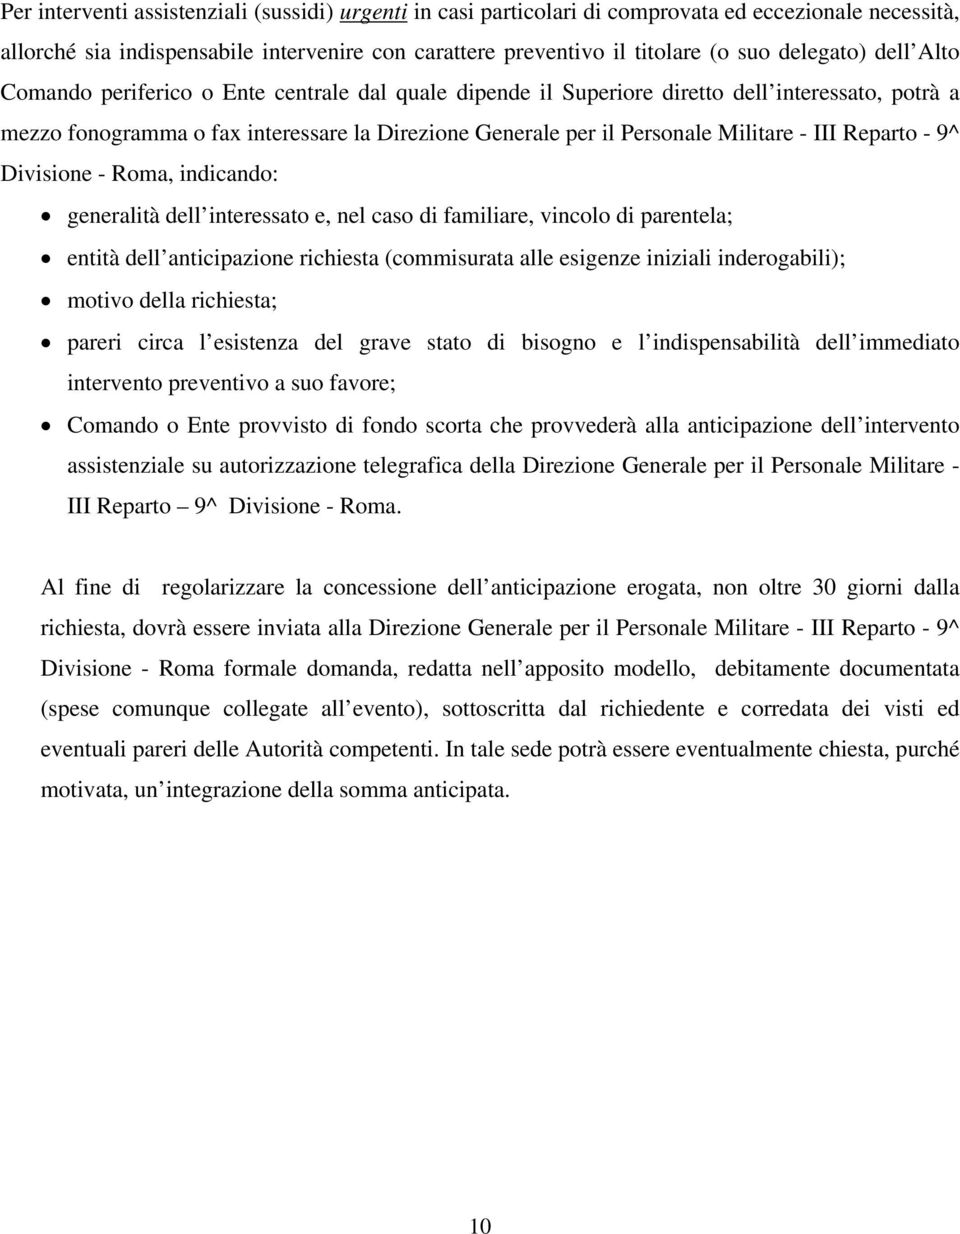 Militare - III Reparto - 9^ Divisione - Roma, indicando: generalità dell interessato e, nel caso di familiare, vincolo di parentela; entità dell anticipazione richiesta (commisurata alle esigenze